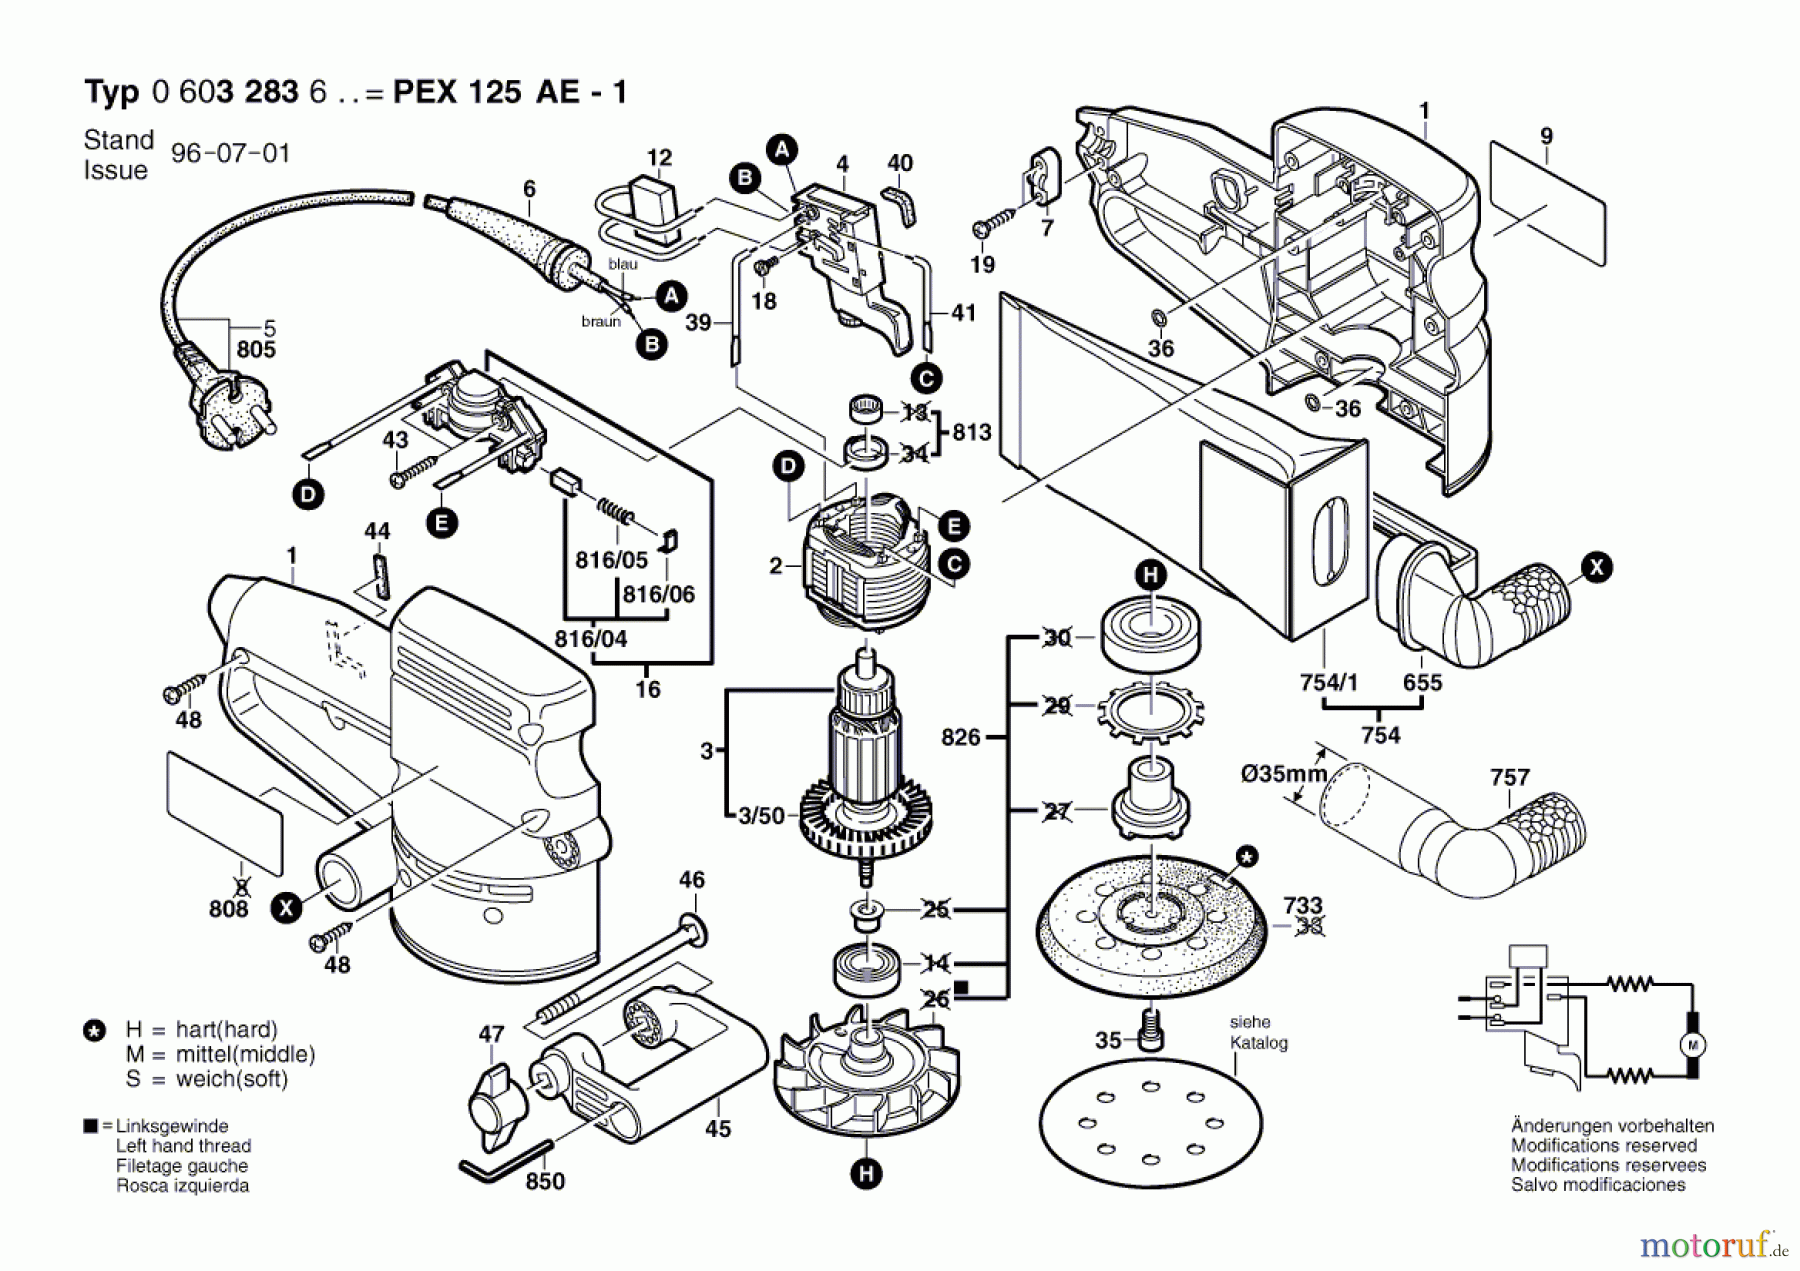  Bosch Werkzeug Exzenterschleifer PEX 125 AE-1 Seite 1